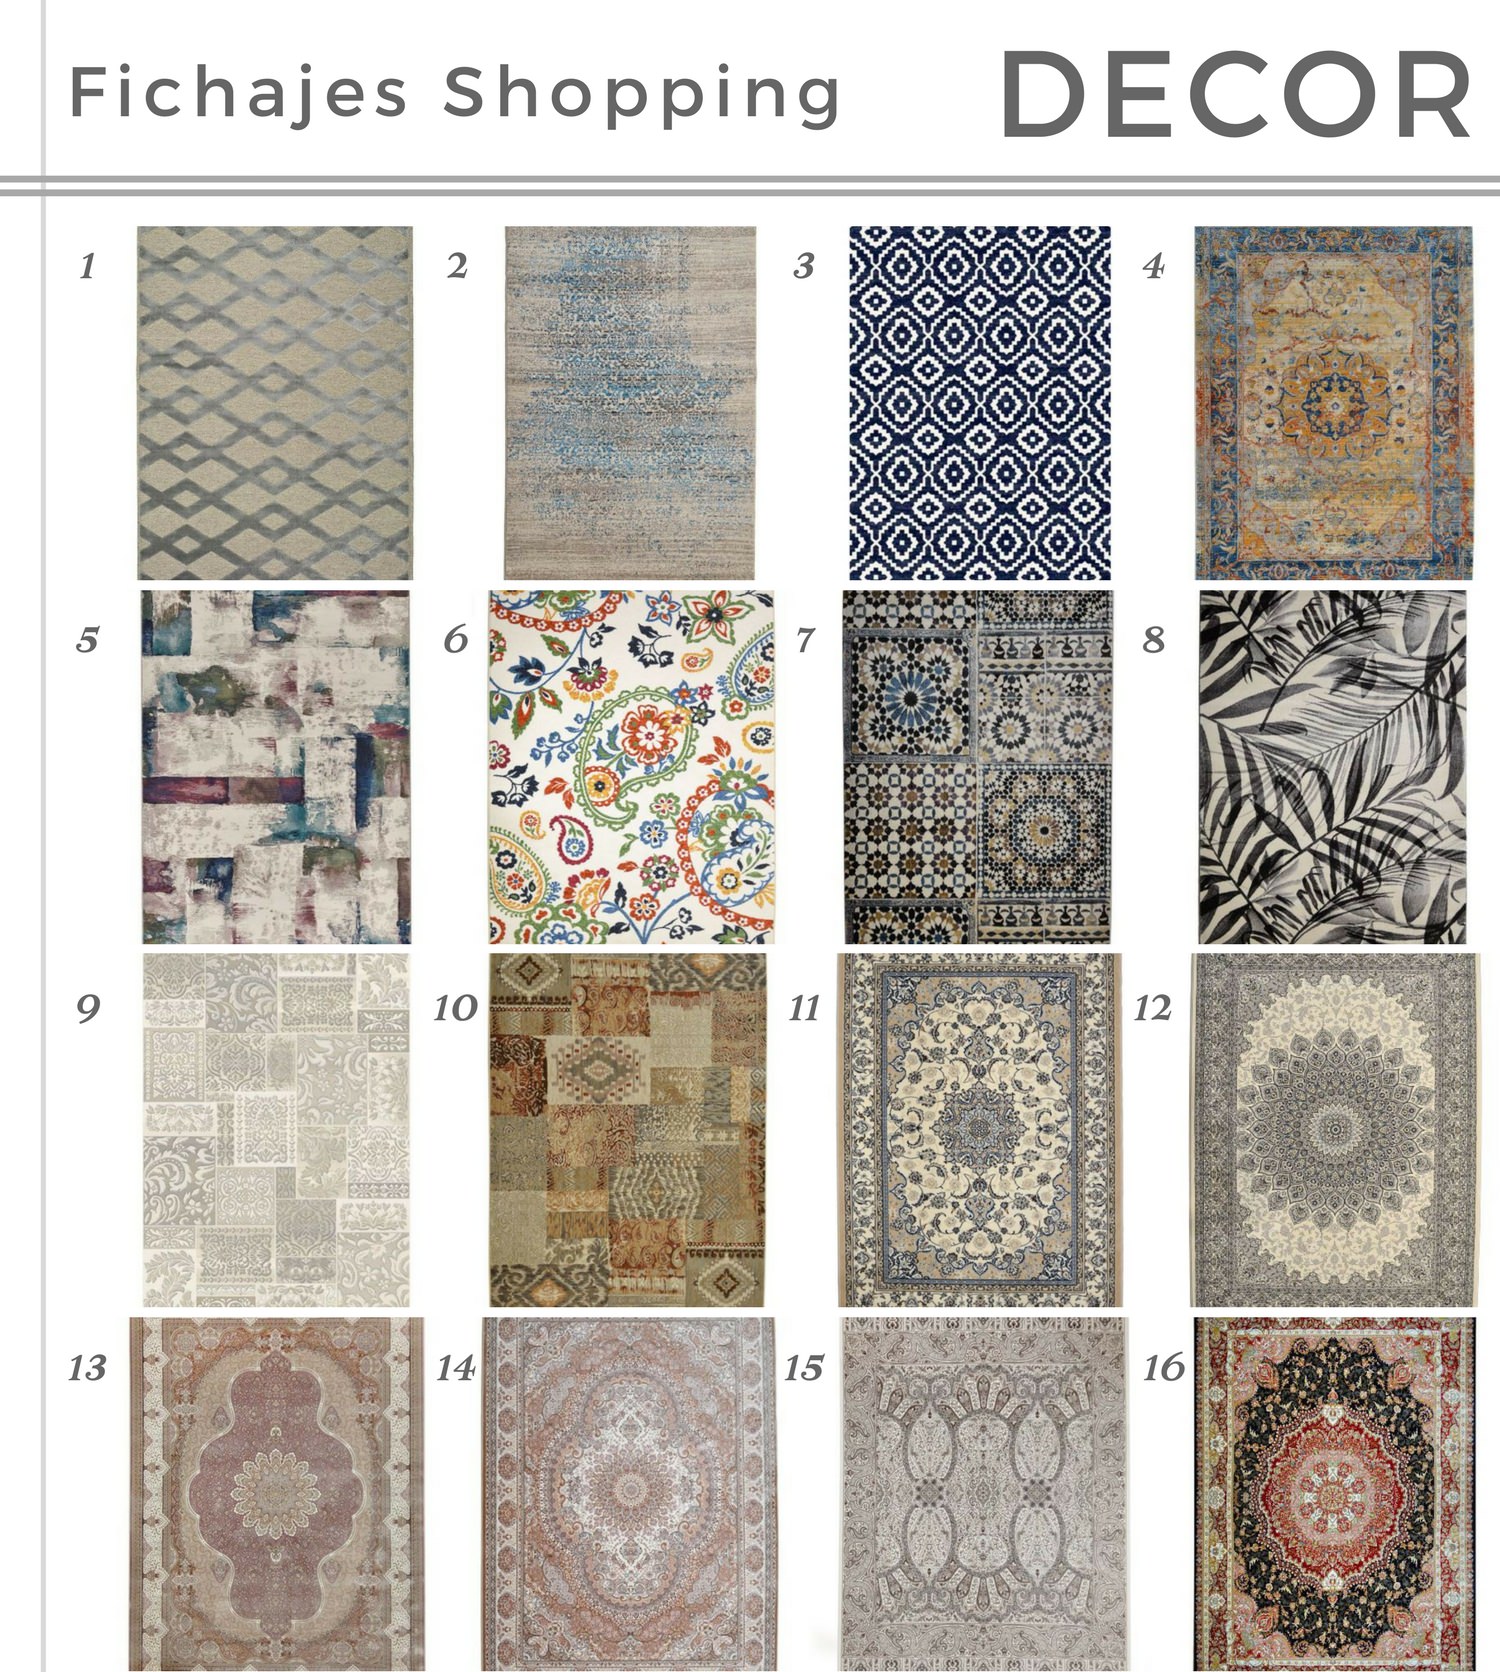 Alfombras_5_razones_para_amarlas_decorar con alfombras_deco-inspiración_decolook_fichajes shopping-06